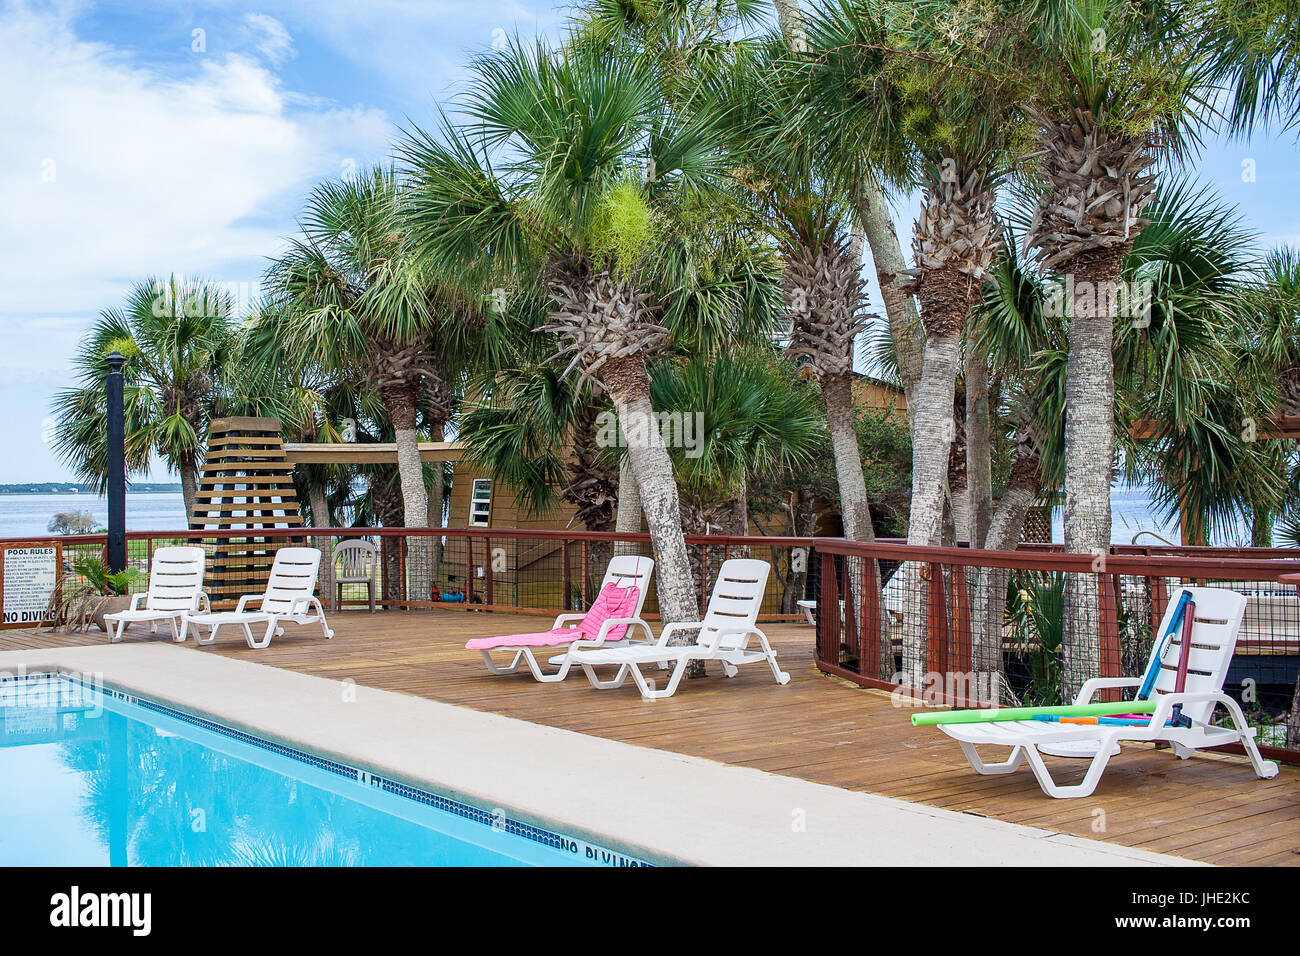 Eine am Pool mit Liegestühlen und Palmen im Hintergrund. Stockfoto